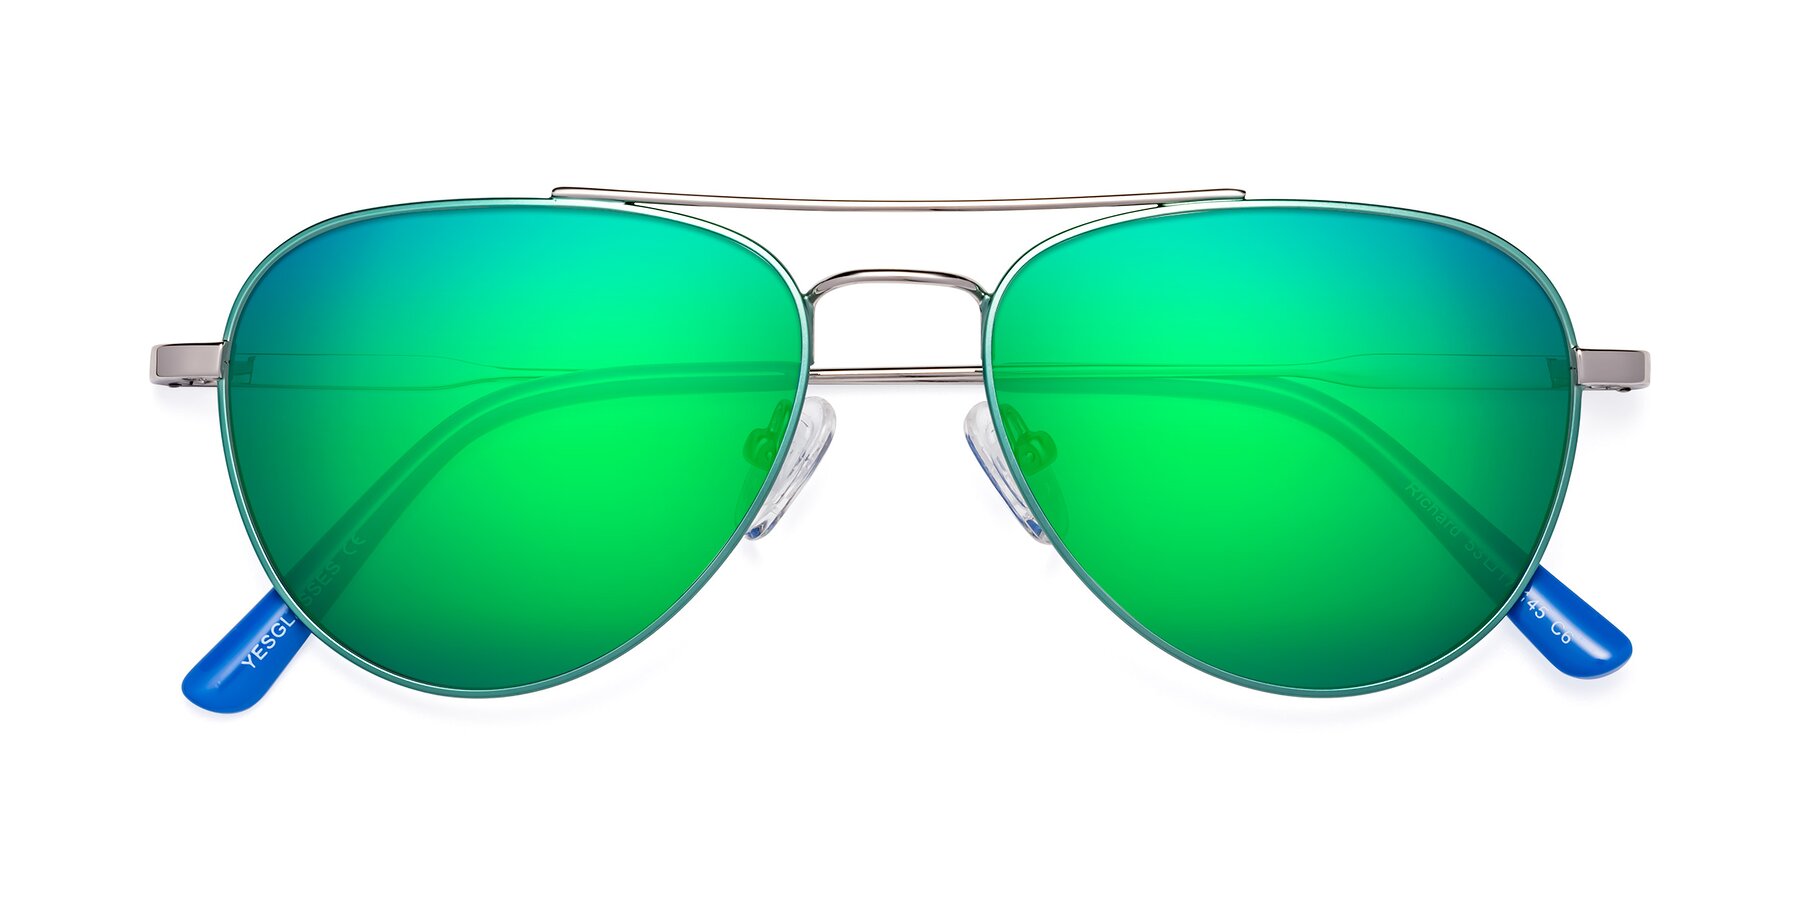 Share 170+ green mirror sunglasses super hot